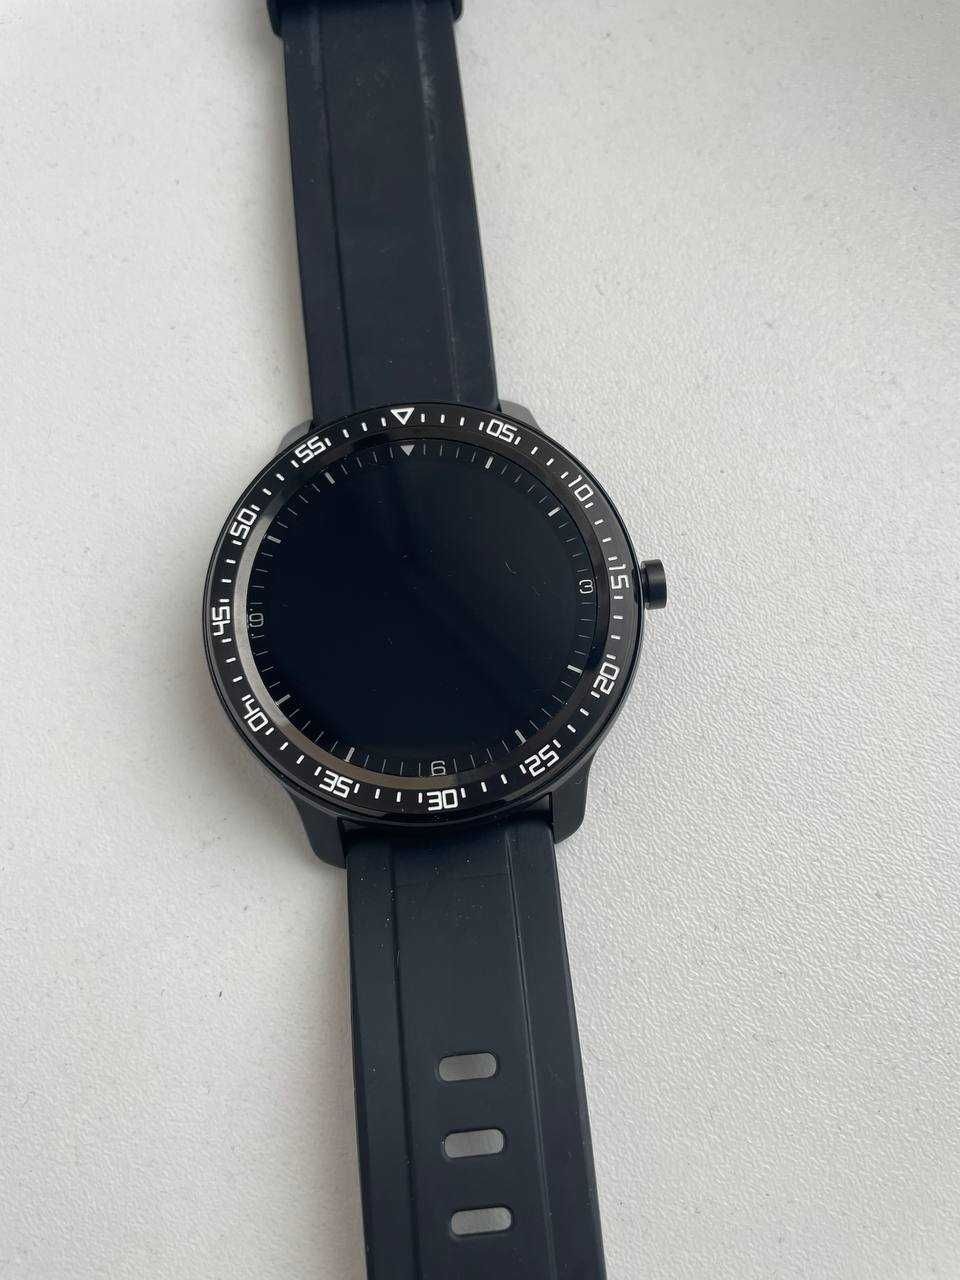 Смарт-часы 2E Alpha X 46 mm Black-Silver